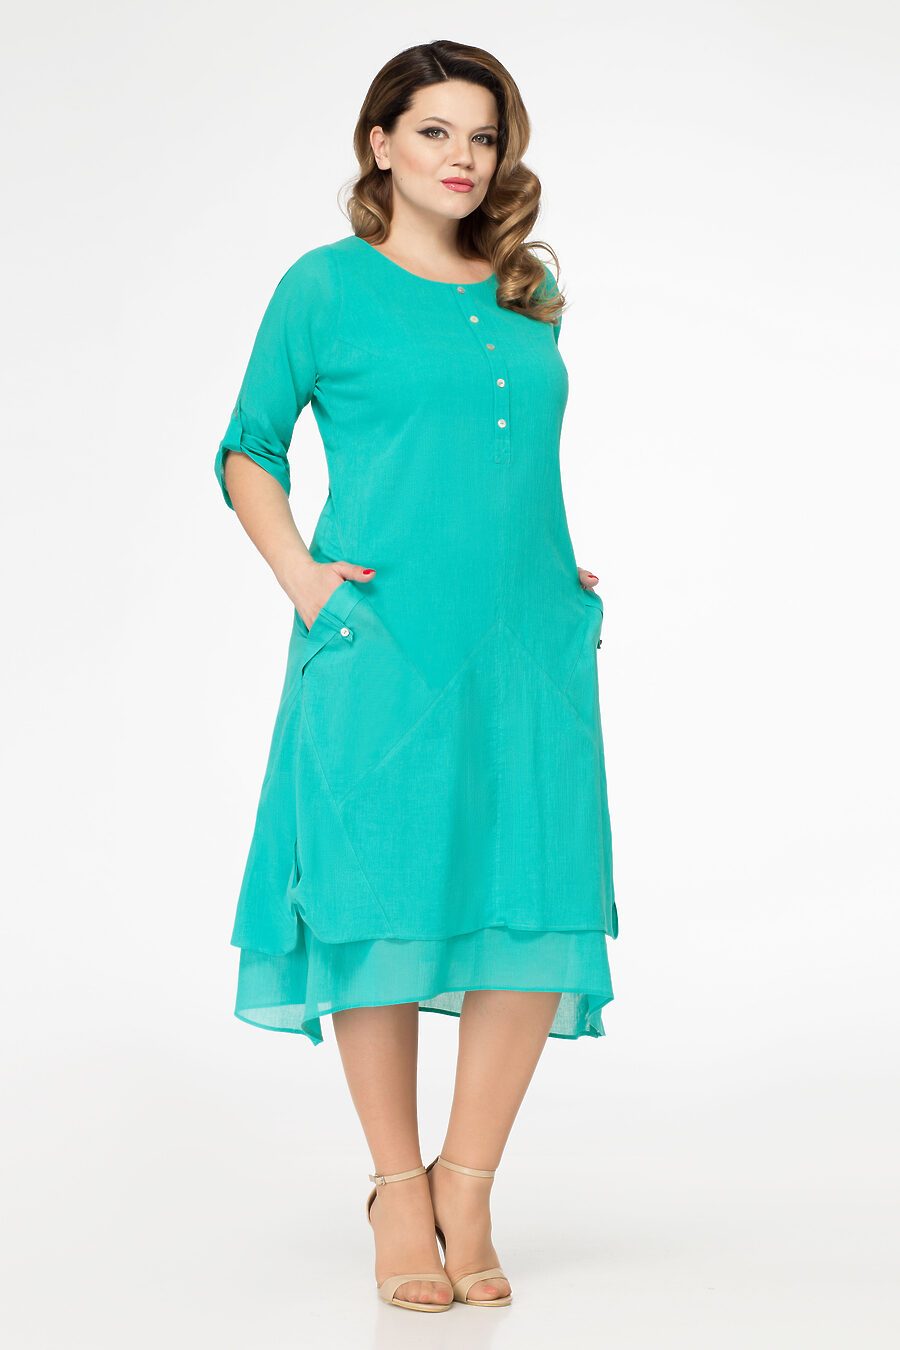 Платье для женщин PANDA 796262 купить оптом от производителя. Совместная покупка женской одежды в OptMoyo